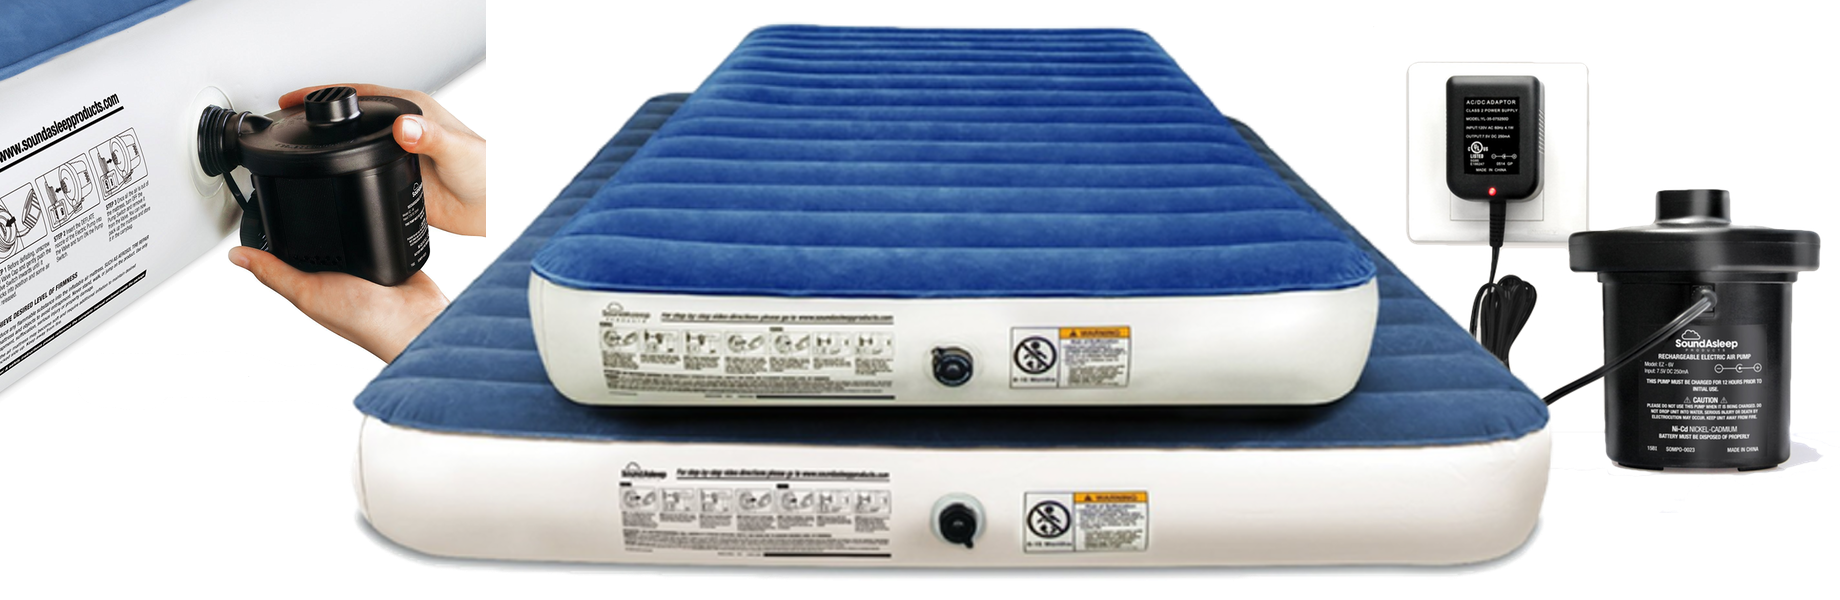 Soundasleep camping best air mattress